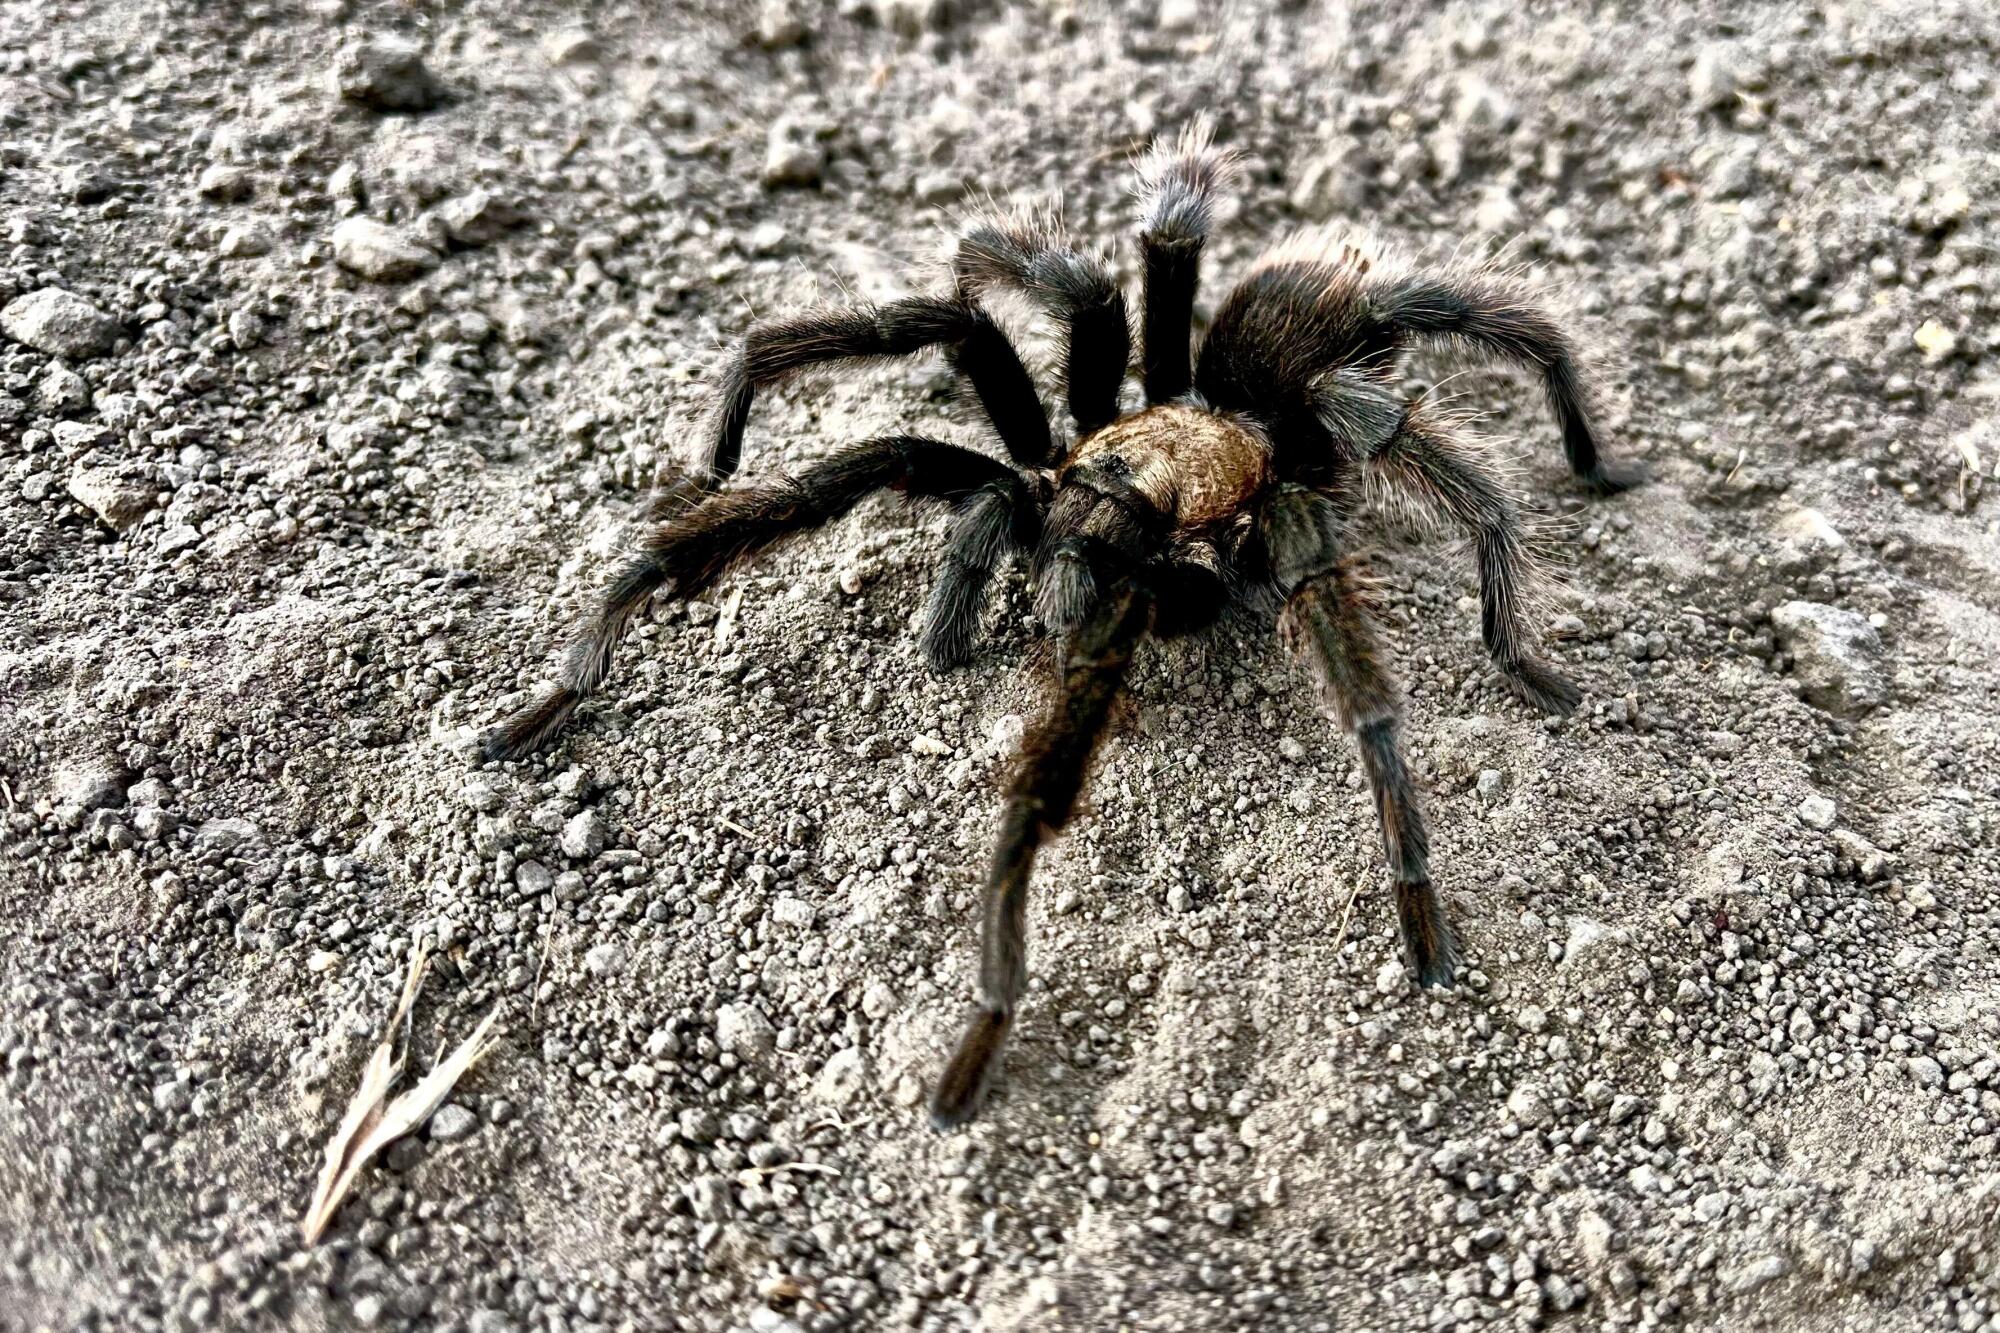  A tarantula walking in sandy dirt